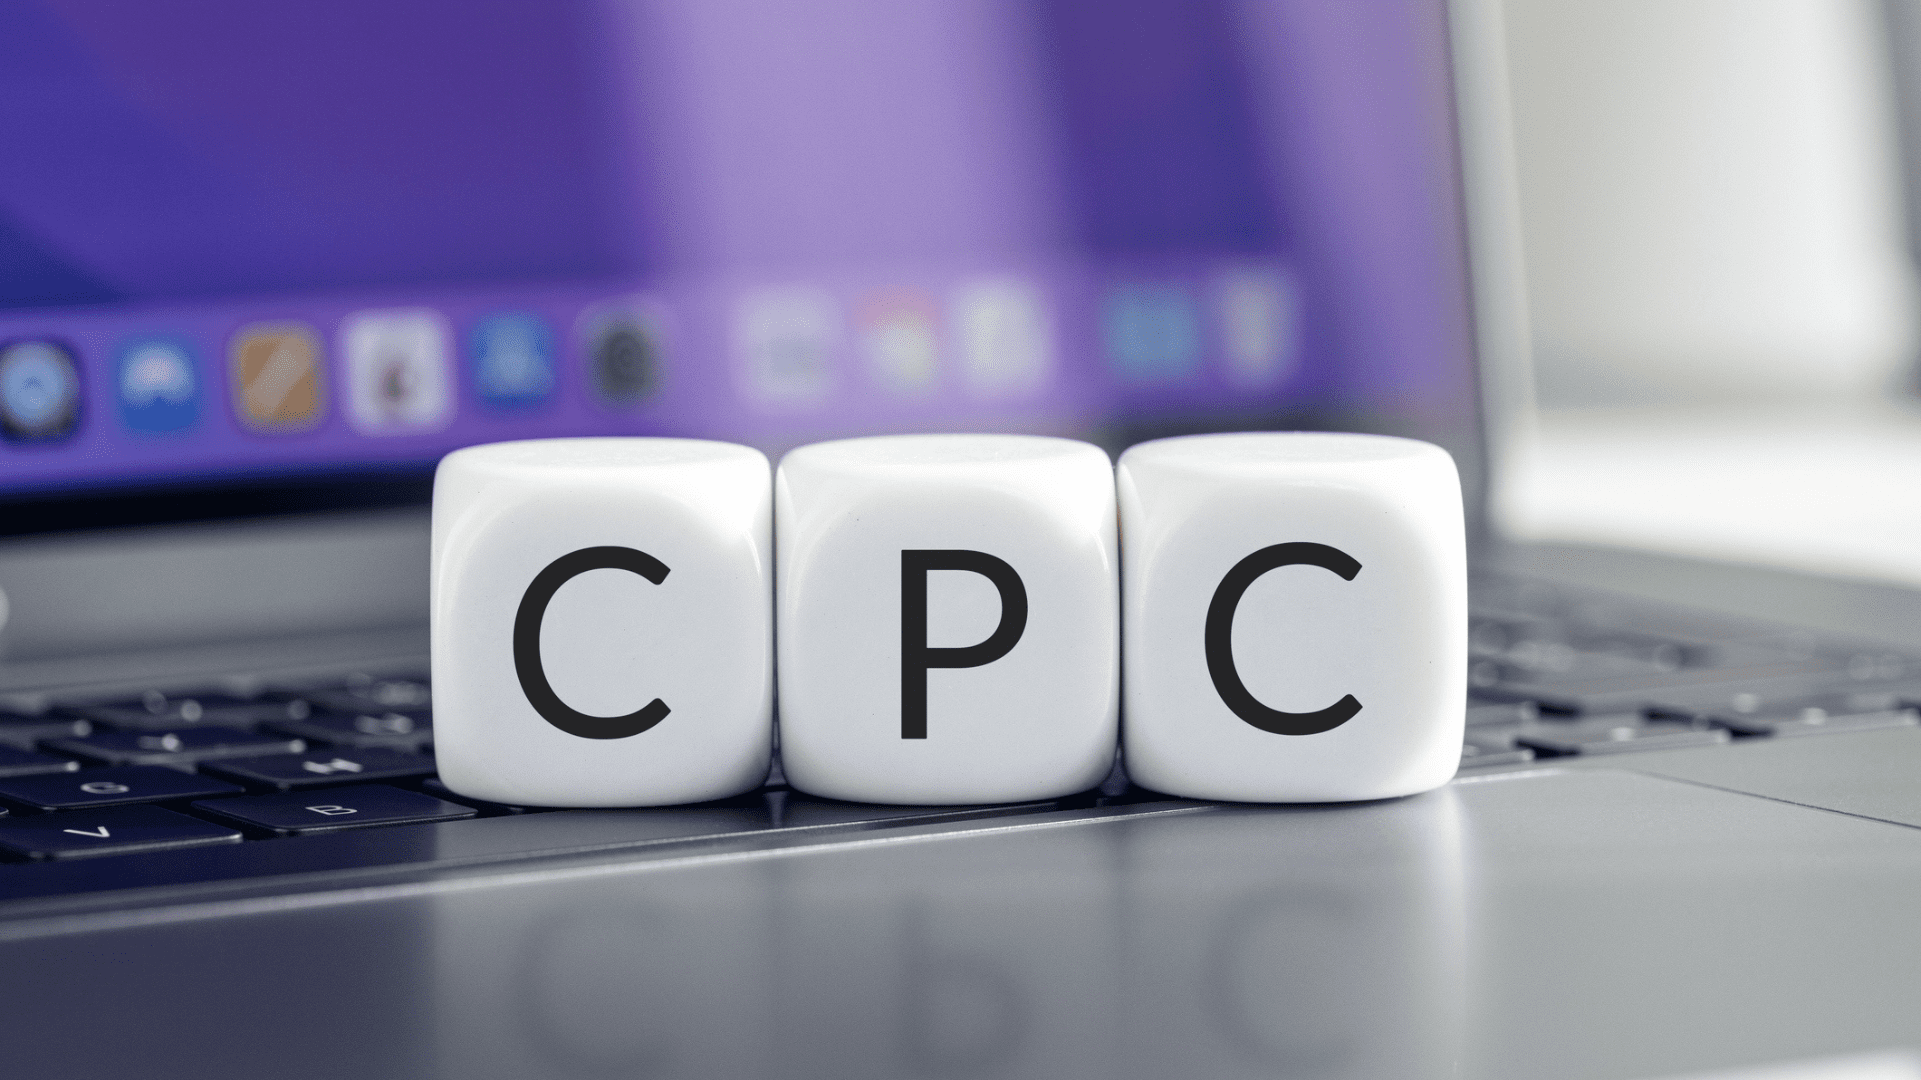 Nesta imagem podemos ver um computador ao fundo e a sigla CPC ganhando destaque. CPC é a sigla para "custo por clique", que é um dos termos de marketing que todo profissional precisa conhecer.